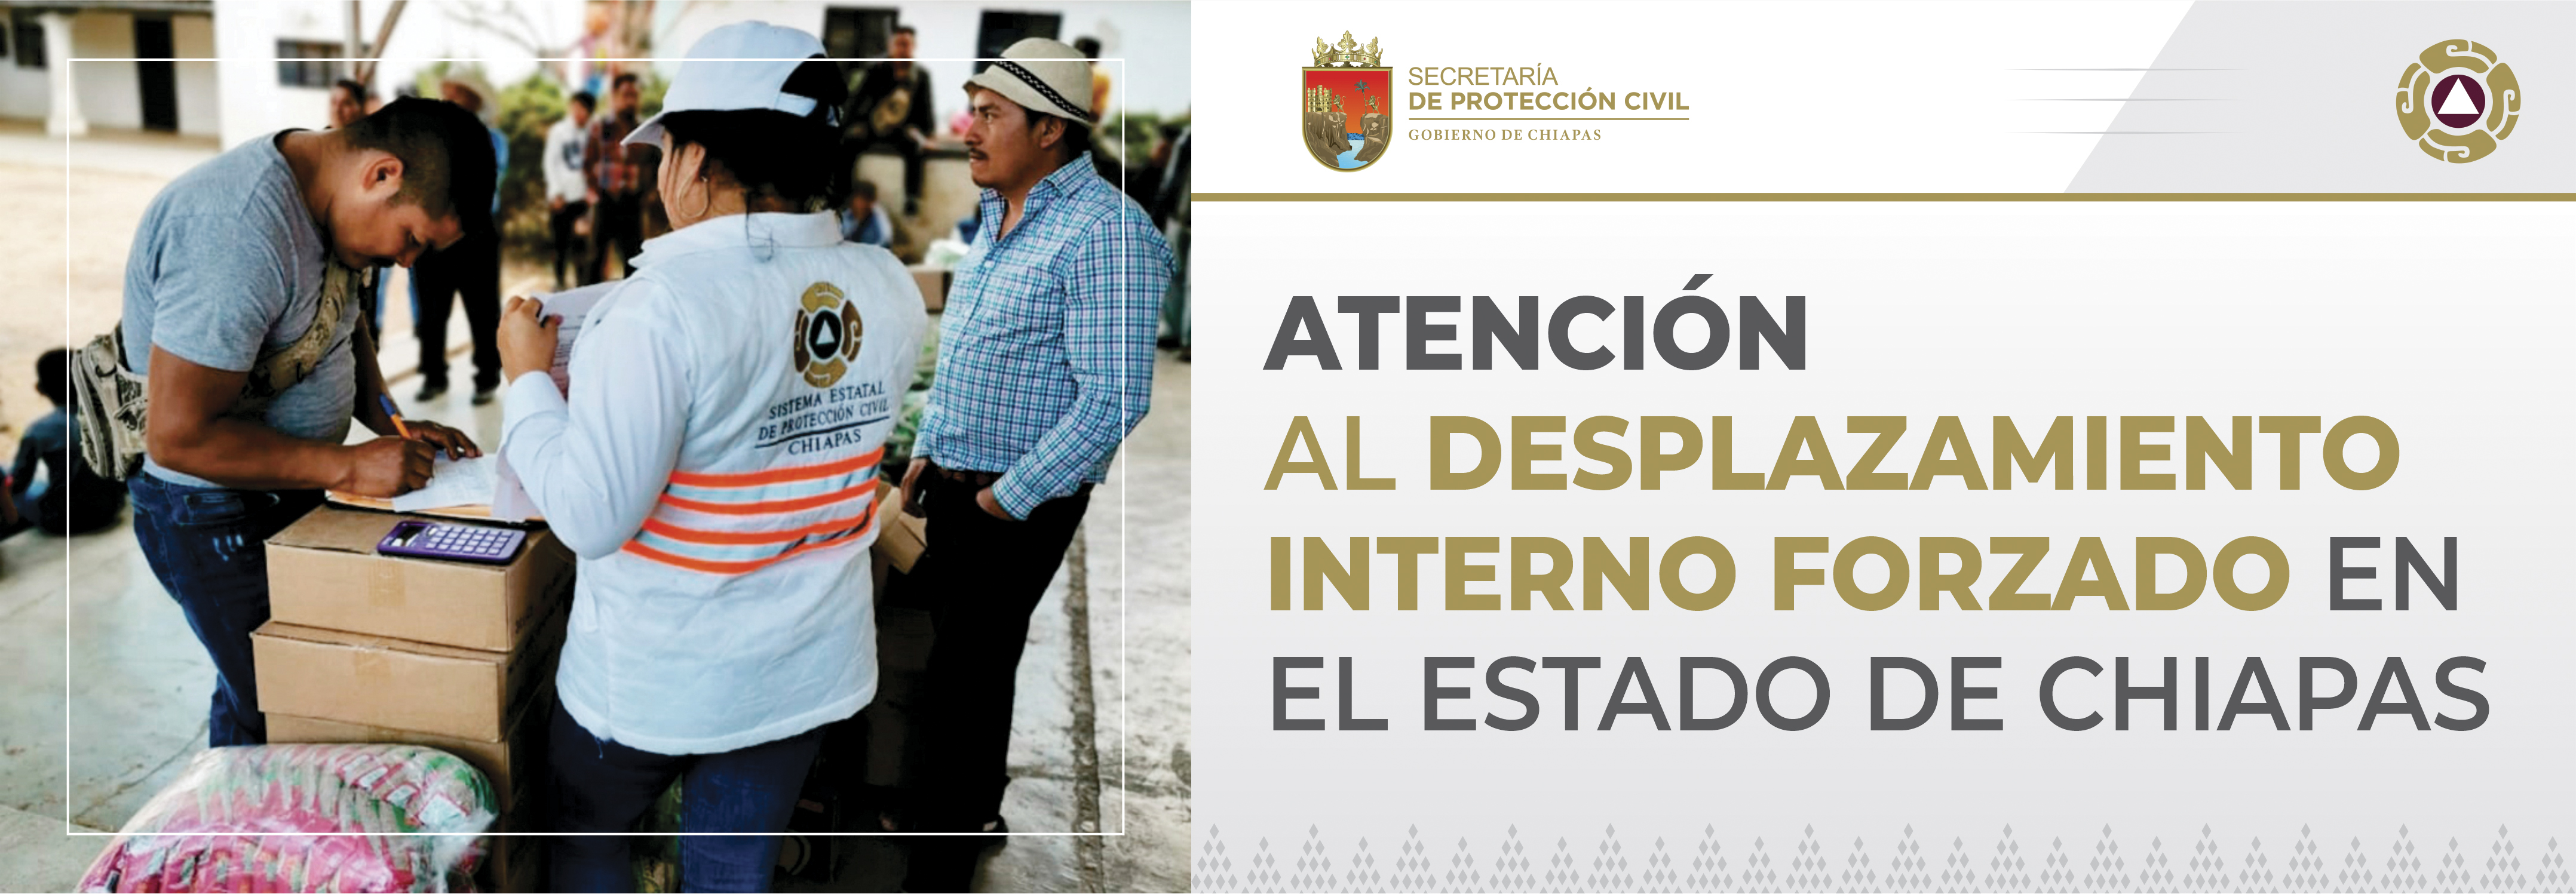 Atención al Desplazamiento Interno Forzado en el Estado de Chiapas